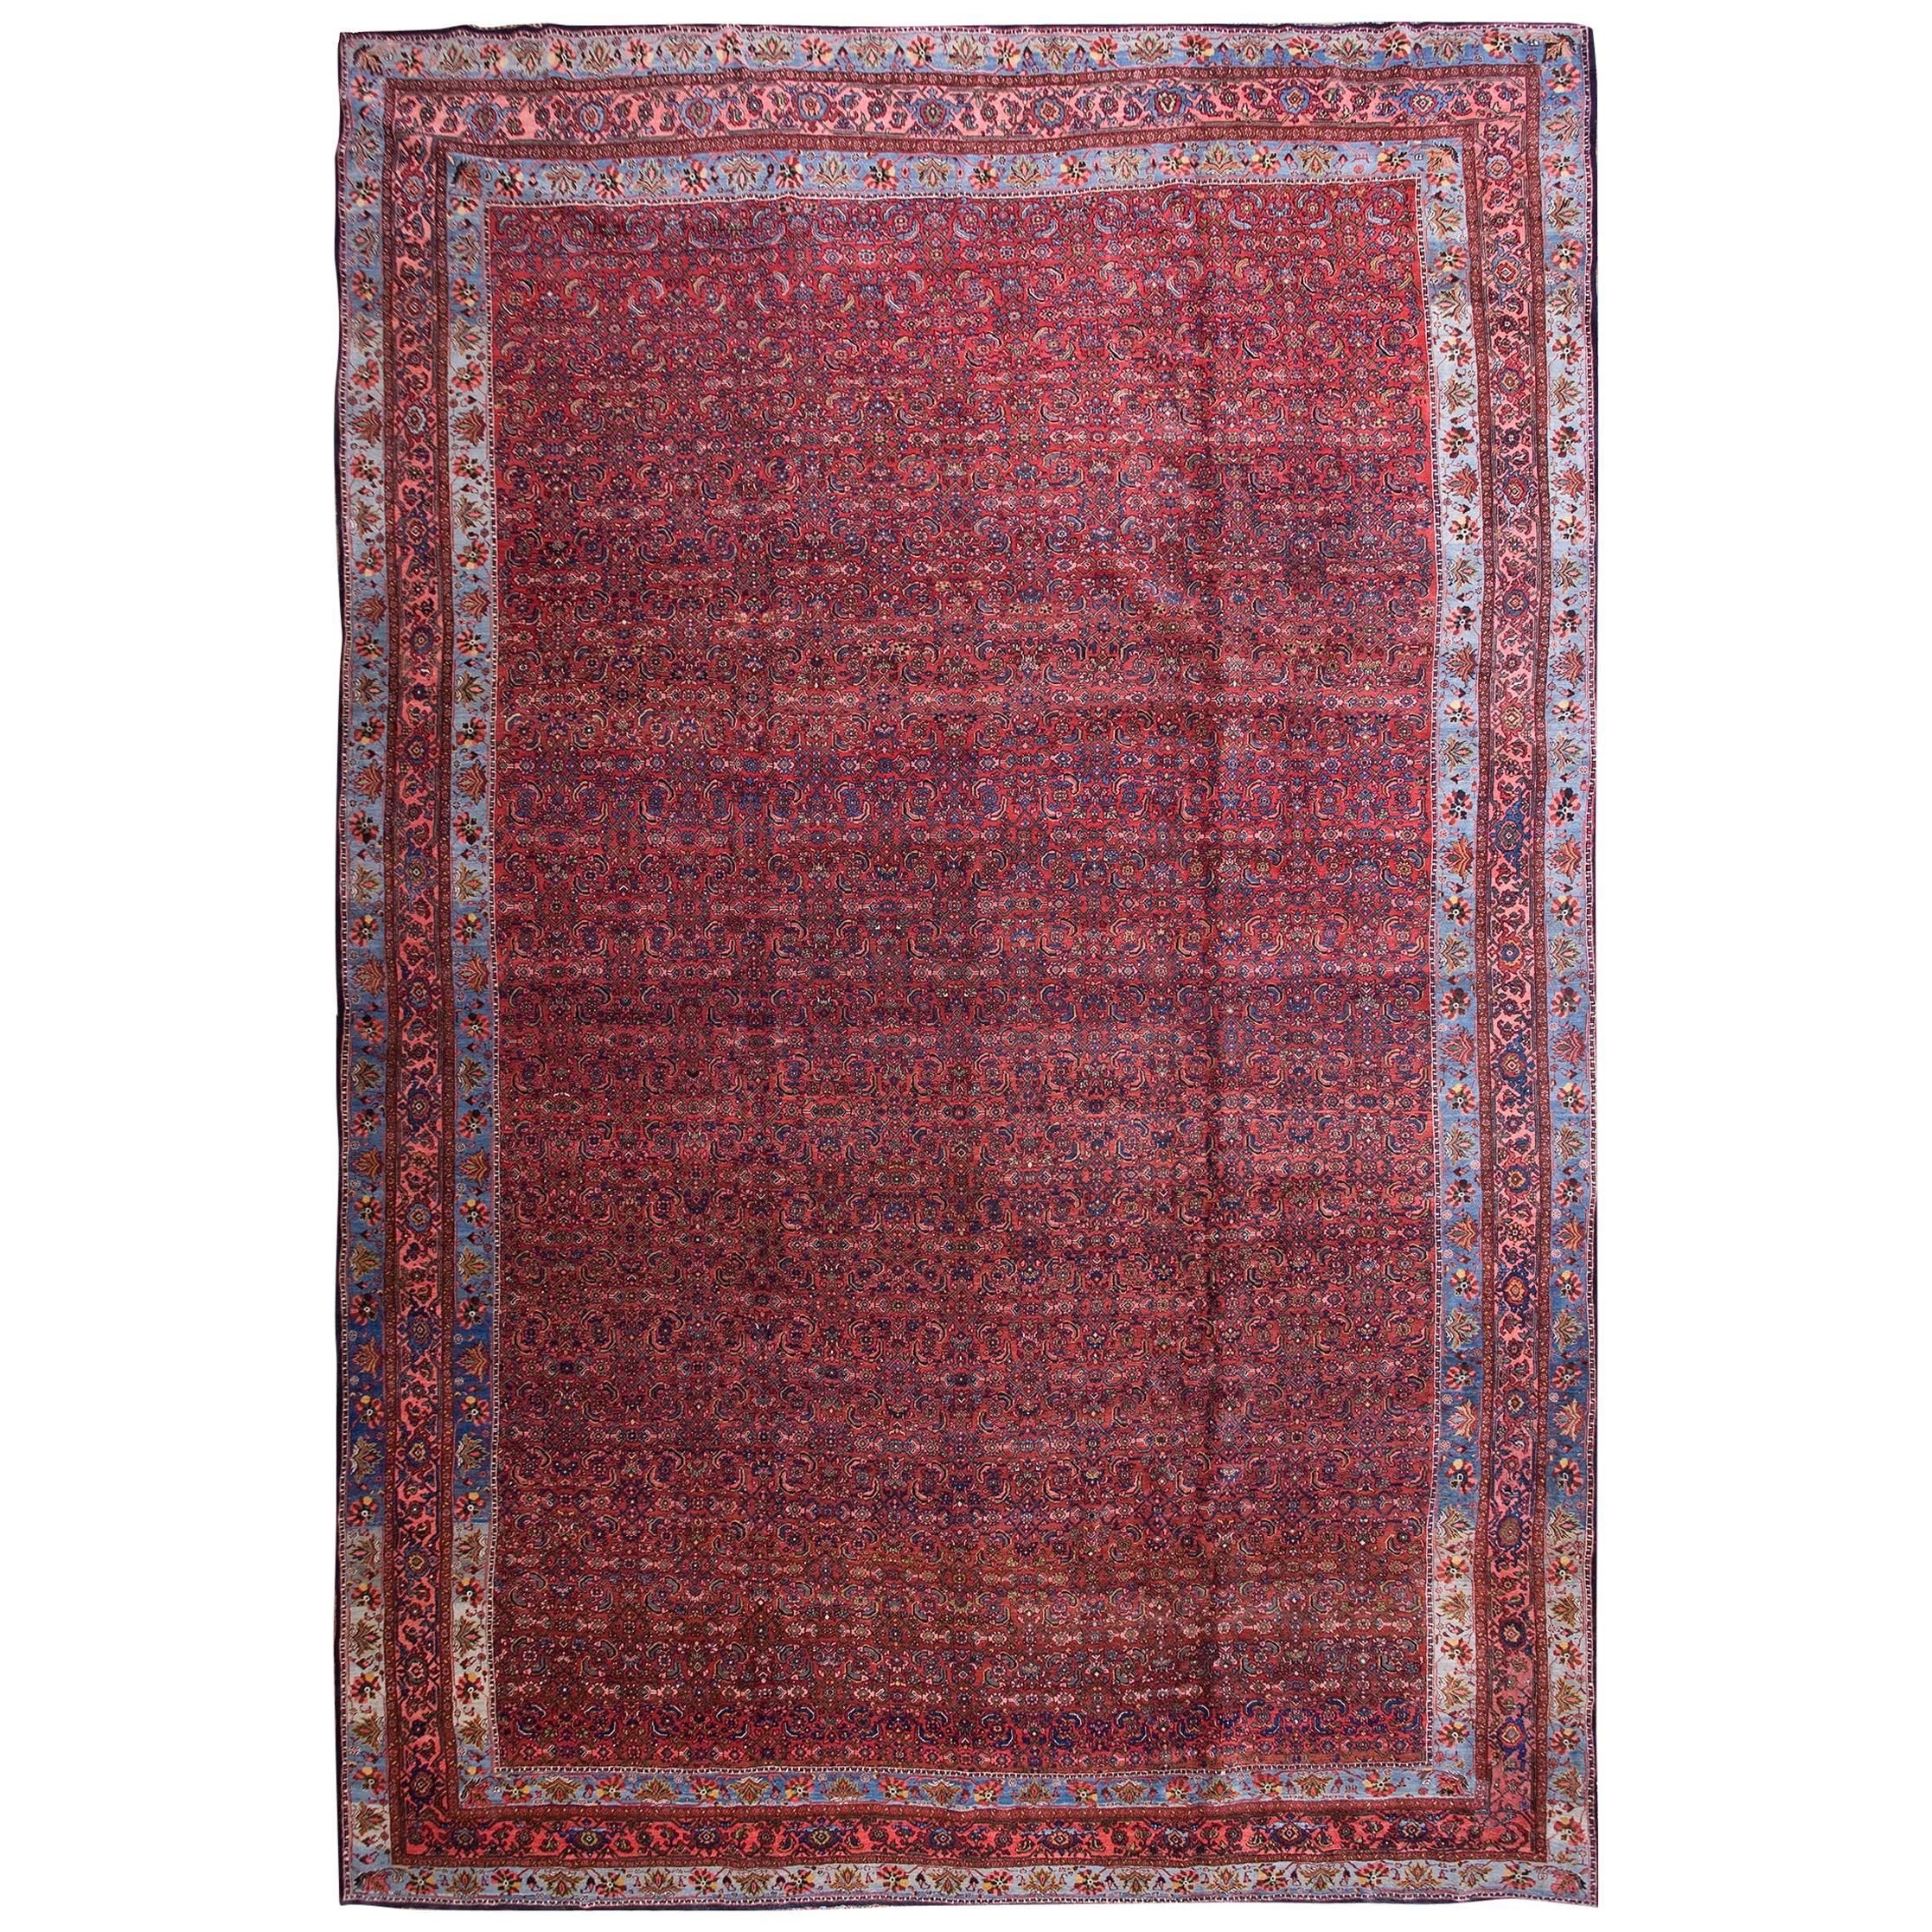 Antique Persian Bijar Rug 13' 4" x 19' 11"